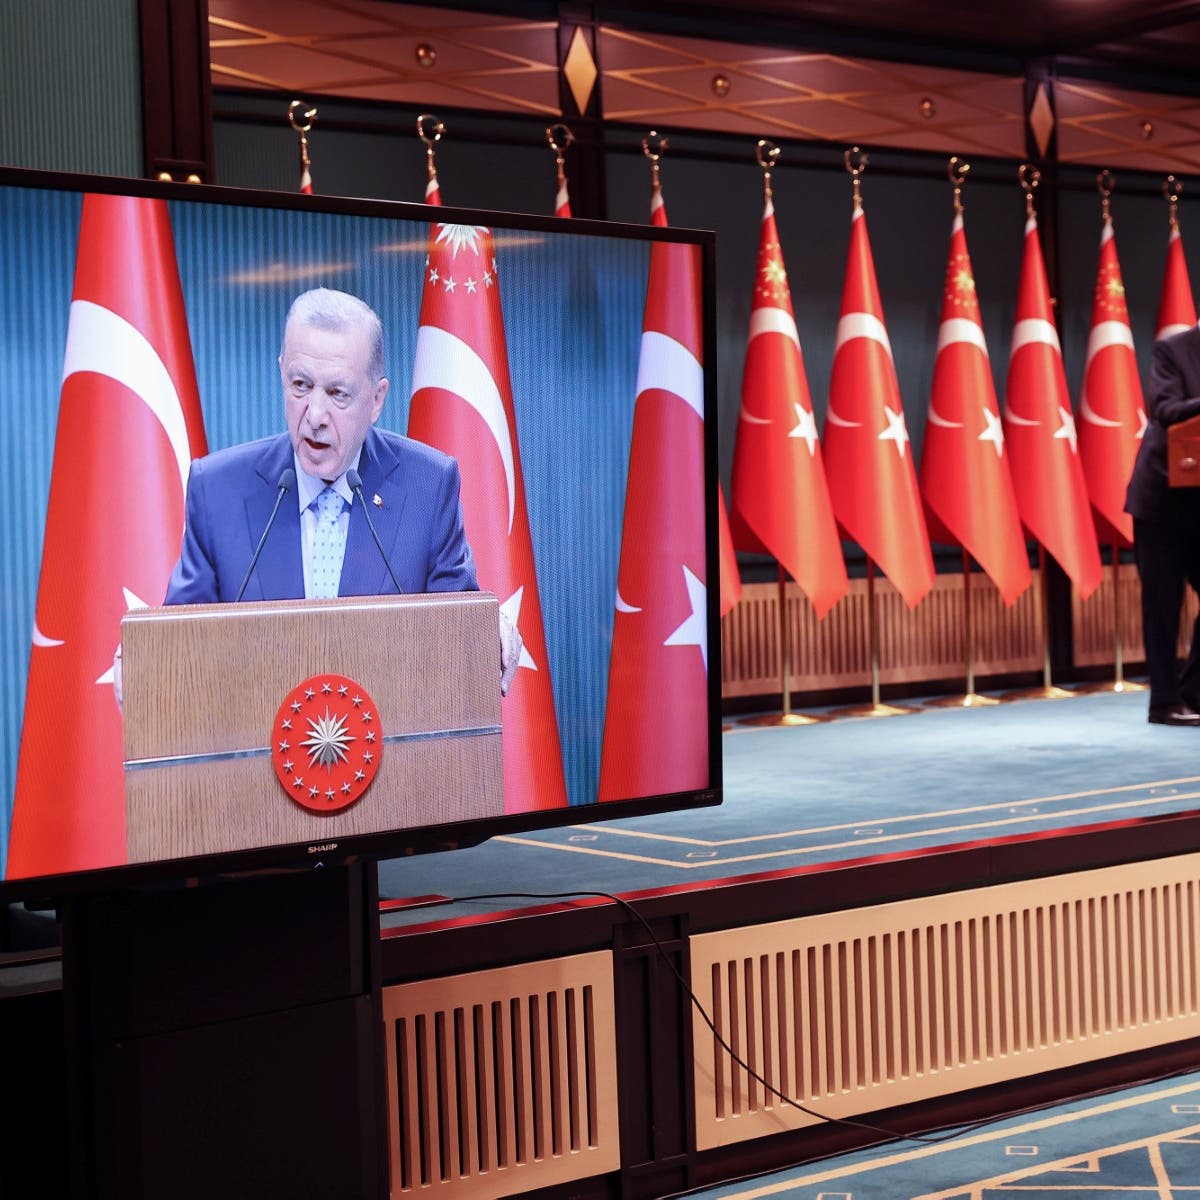 "قرن تركيا" قد يكون اسم دعاية أردوغان الانتخابية.. فما دلالته؟